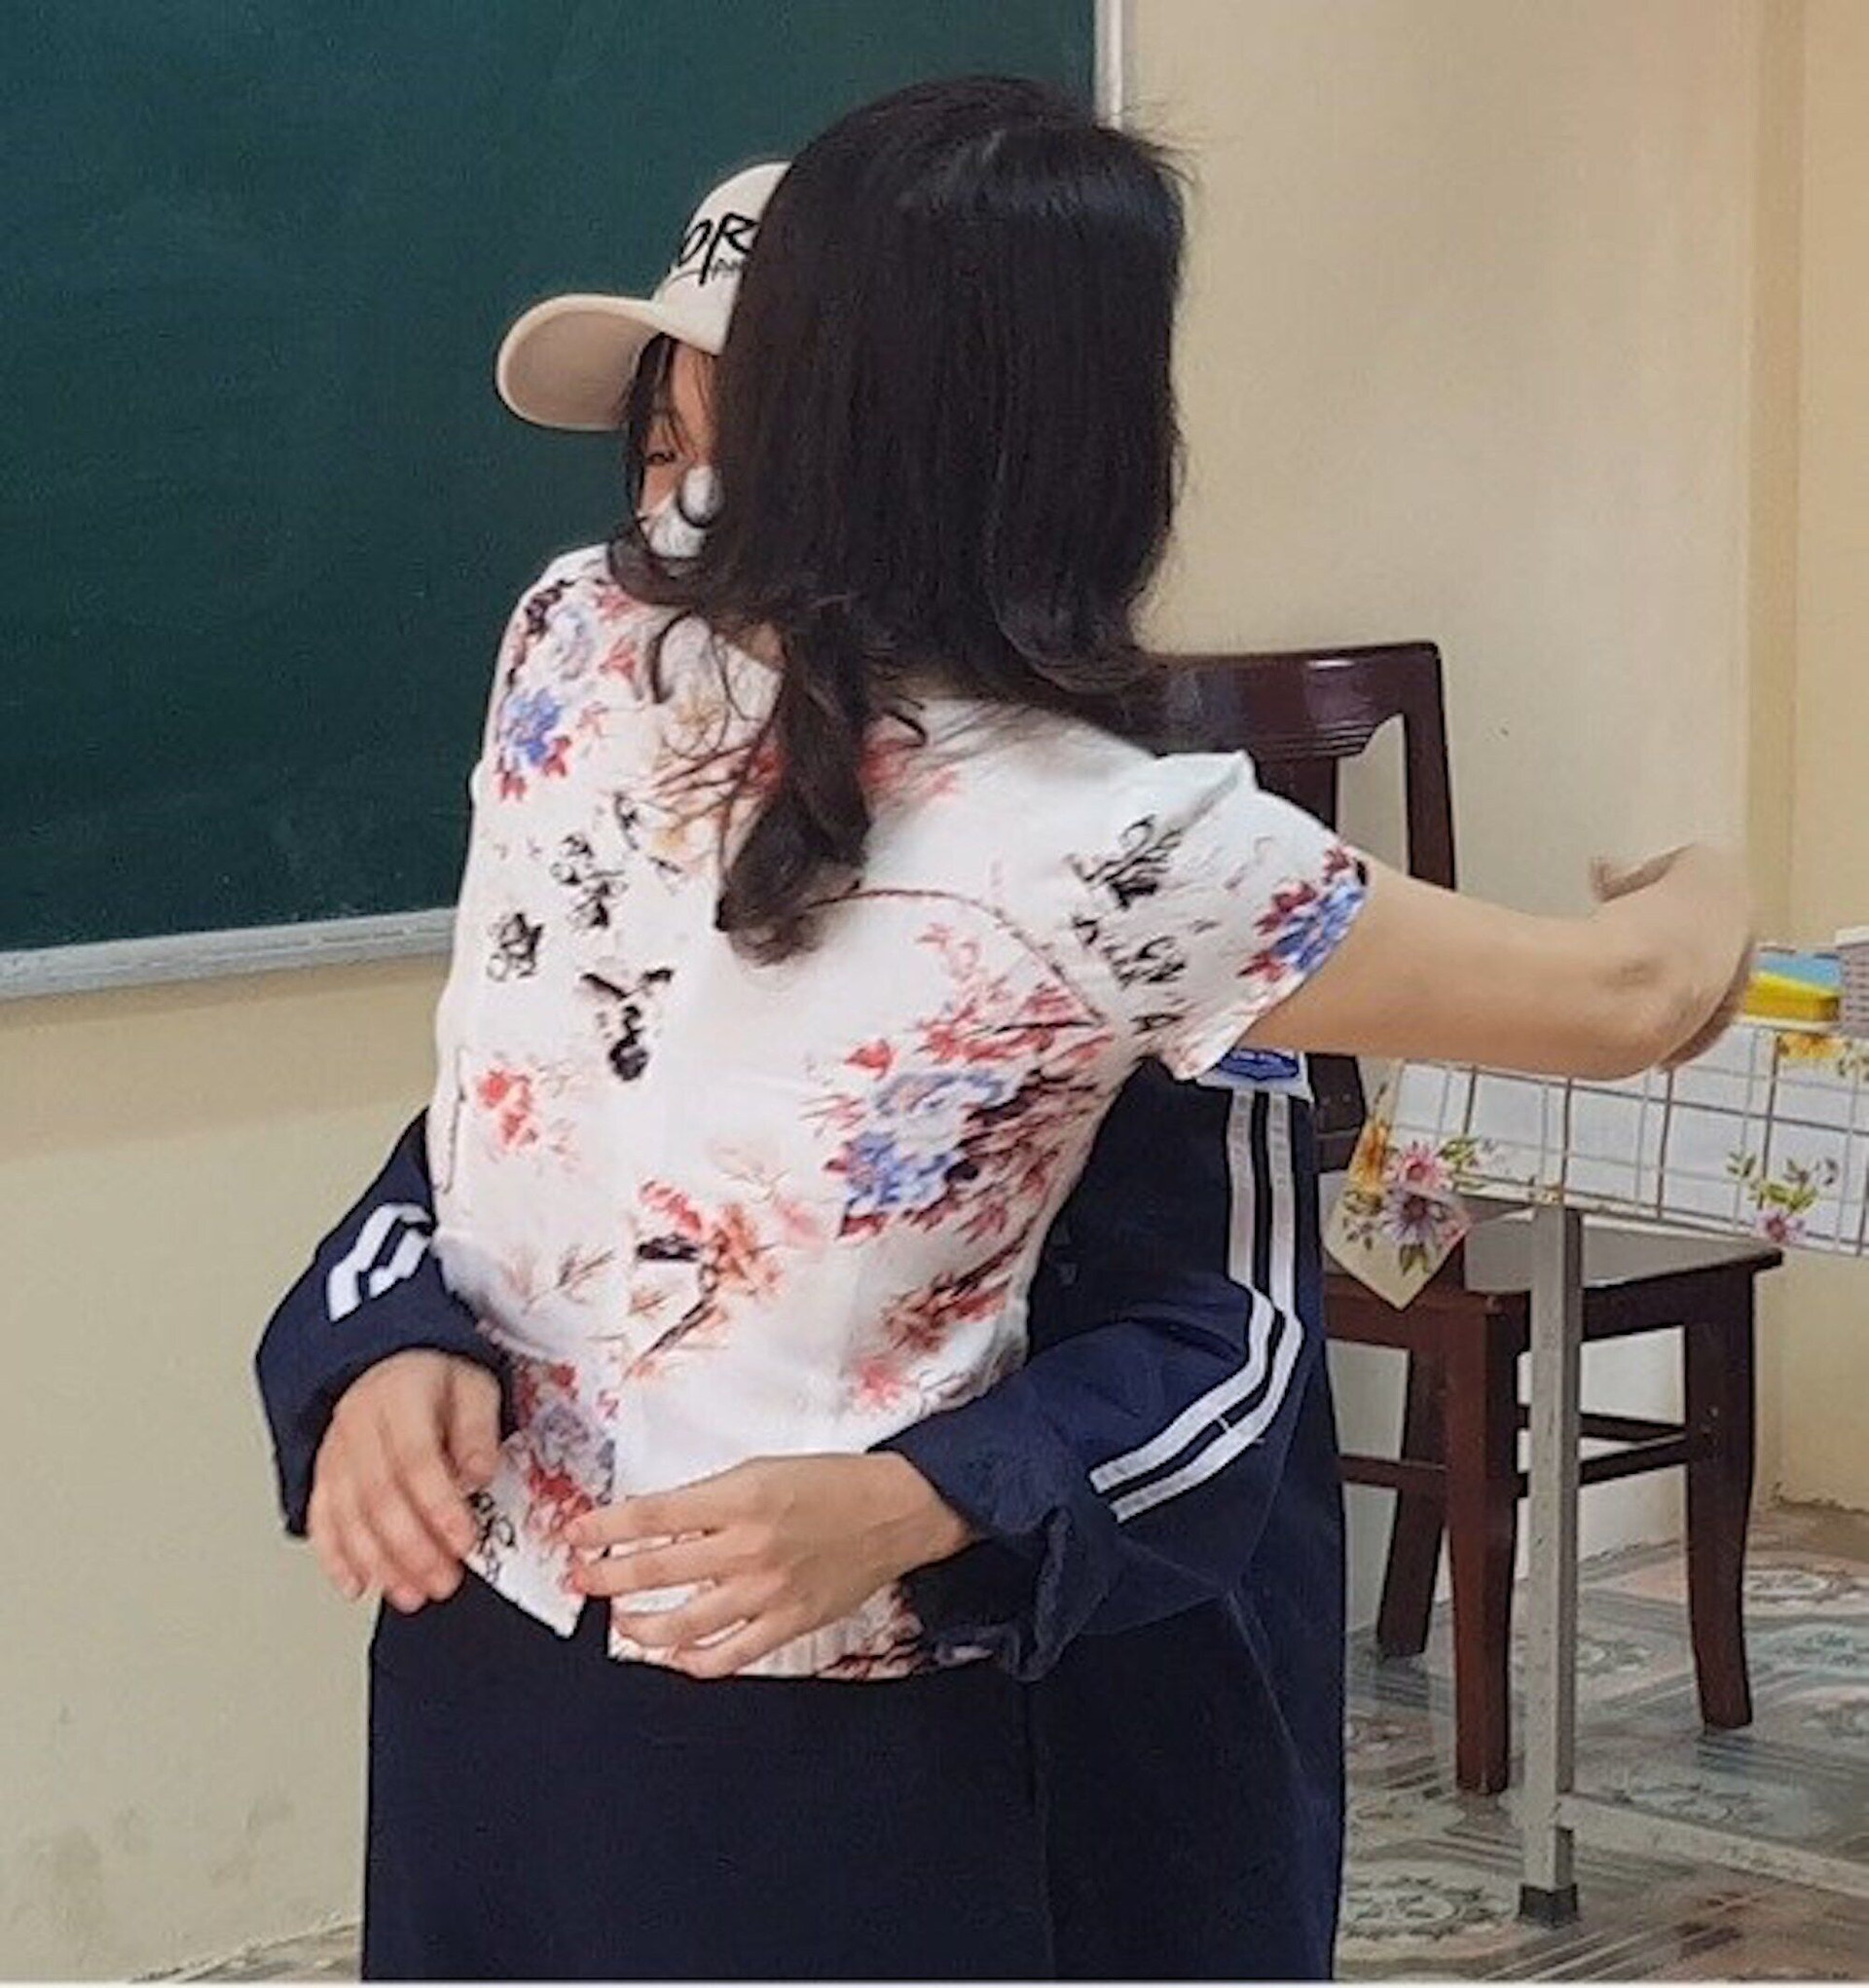 Giáo viên cắt tóc nữ sinh: Cô trò ôm nhau xin lỗi trước lớp, cả hai đều nhận sai - 1